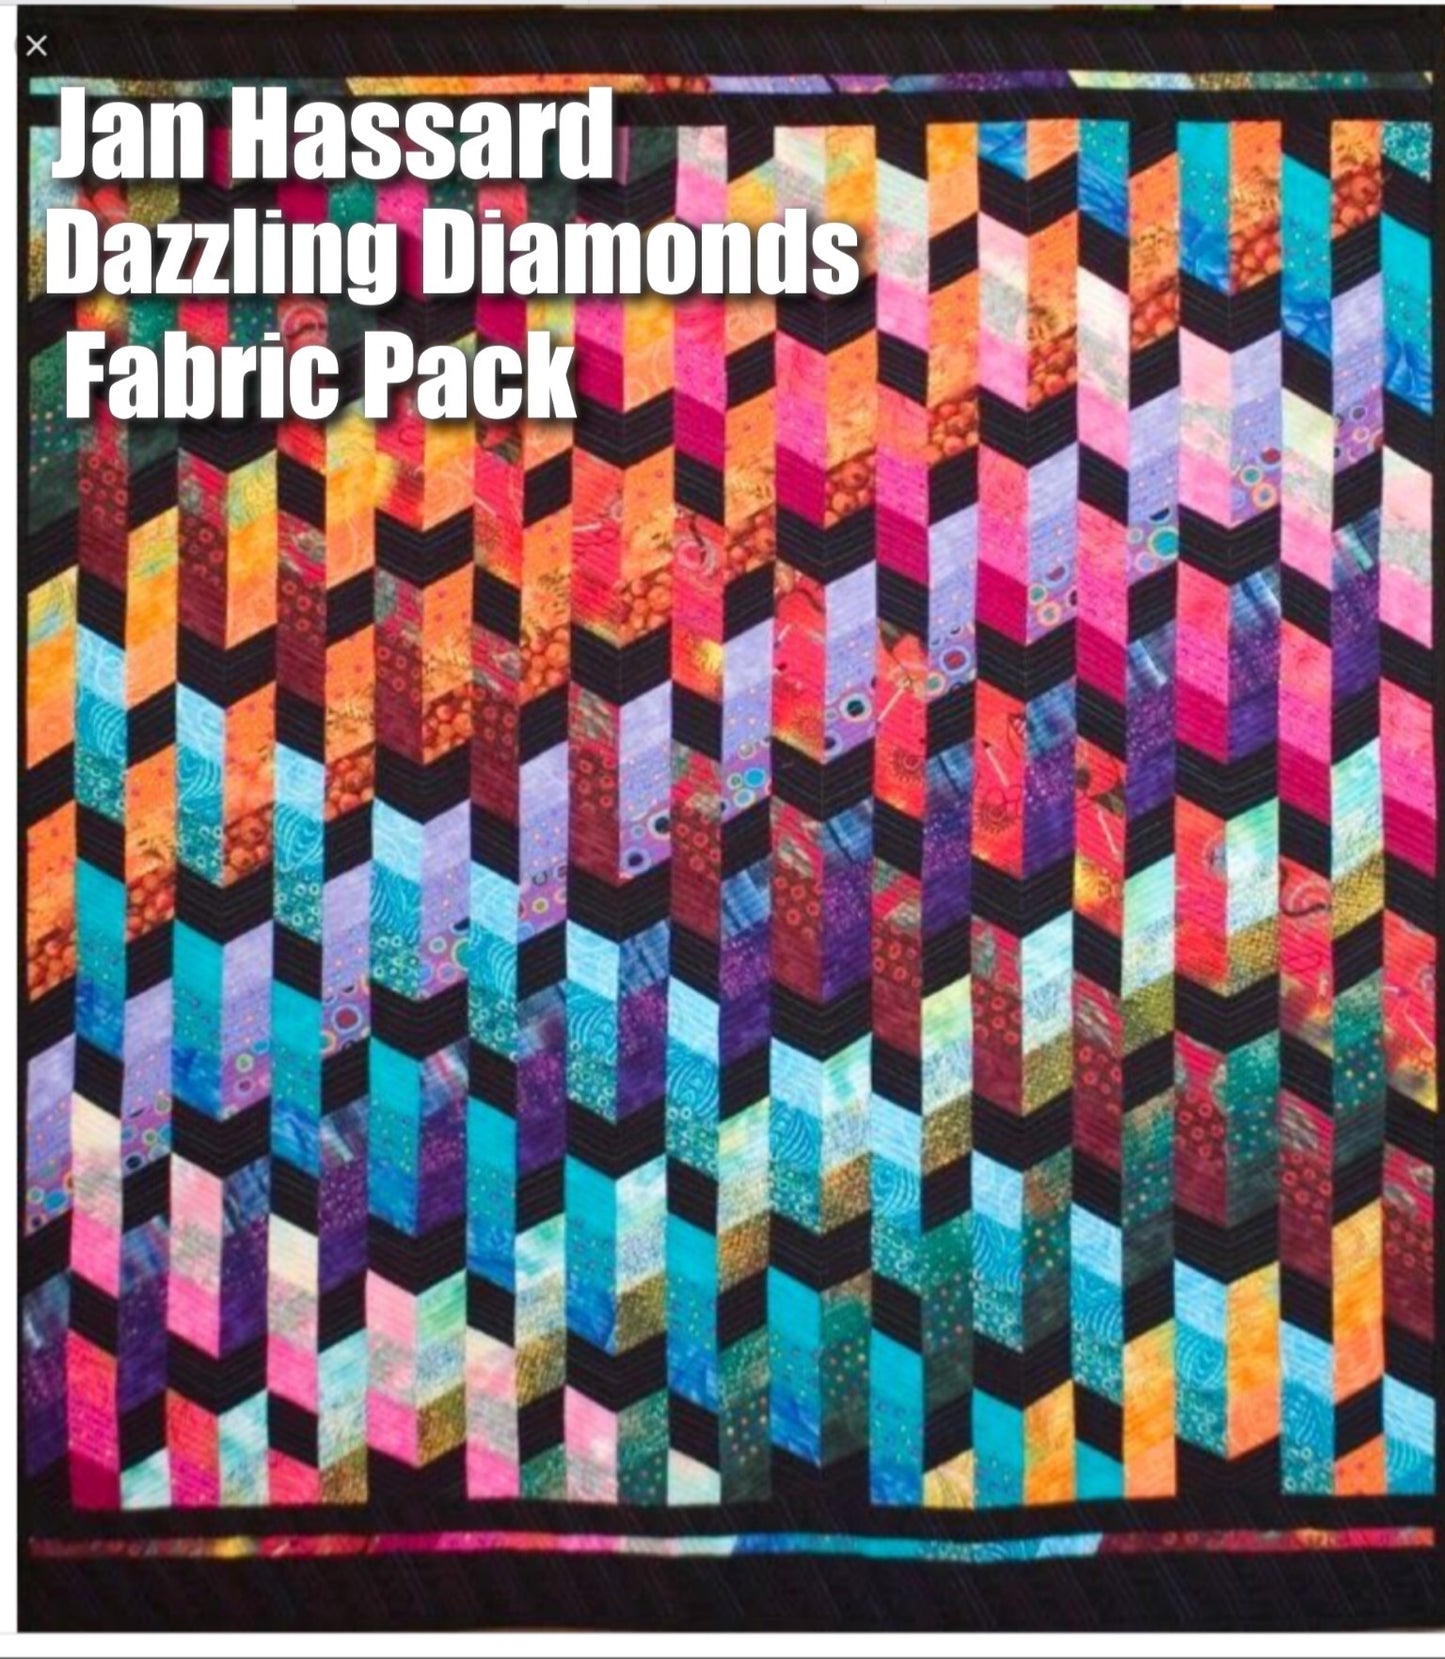 Jan Hassard’s Dazzling Diamonds Fabric Pack